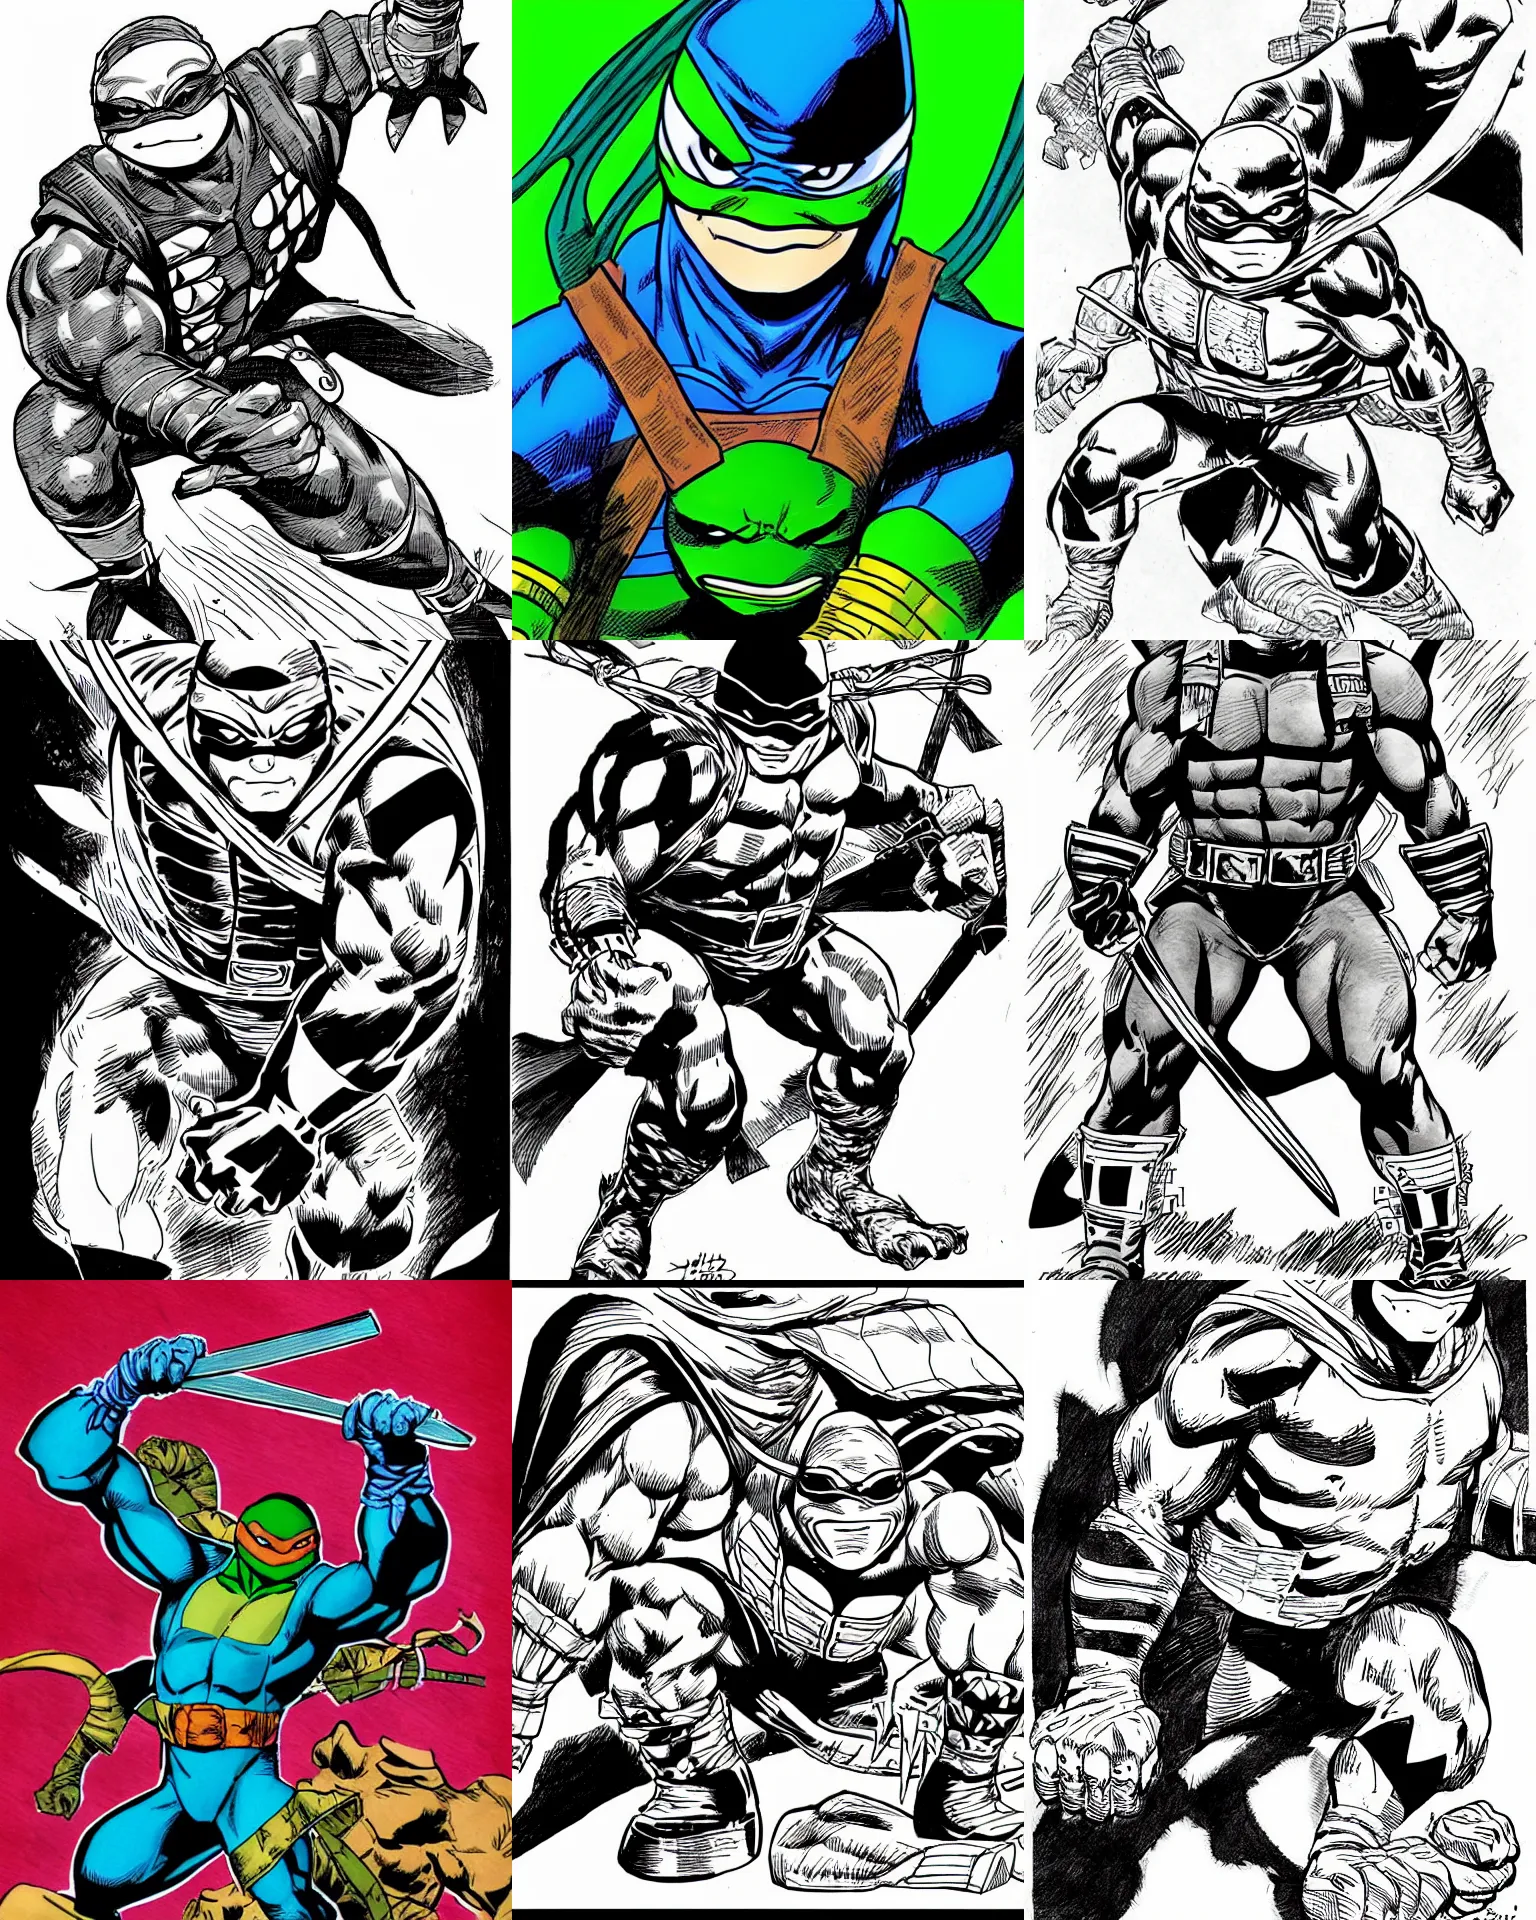 Image similar to ninja turtle!!! jim lee!!! medium shot!! flat ink sketch by jim lee close up in the style of jim lee, x - men superhero comic book ninja turtle animal by jim lee